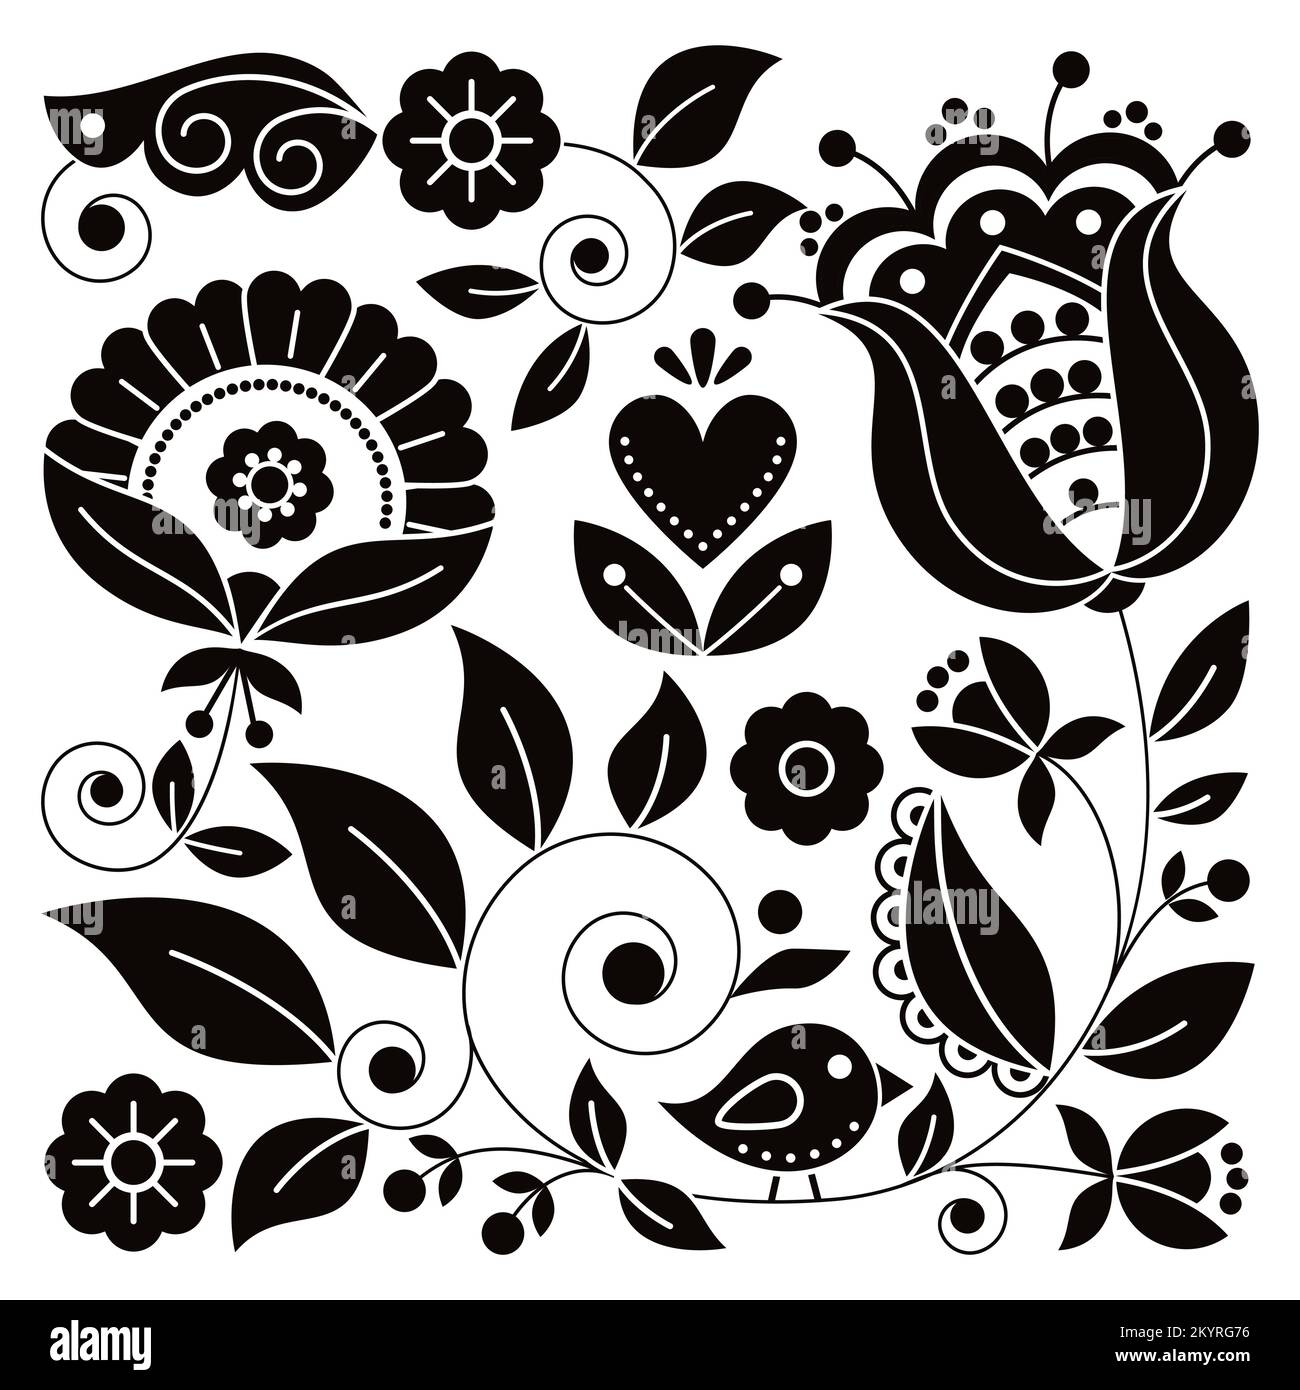 Skandinavische Volkskunst-Vektoren in Schwarz und Weiß mit quadratischem Blumendesign und Vogel, inspiriert von traditionellen Stickereien aus Schweden – perfekt für gree Stock Vektor